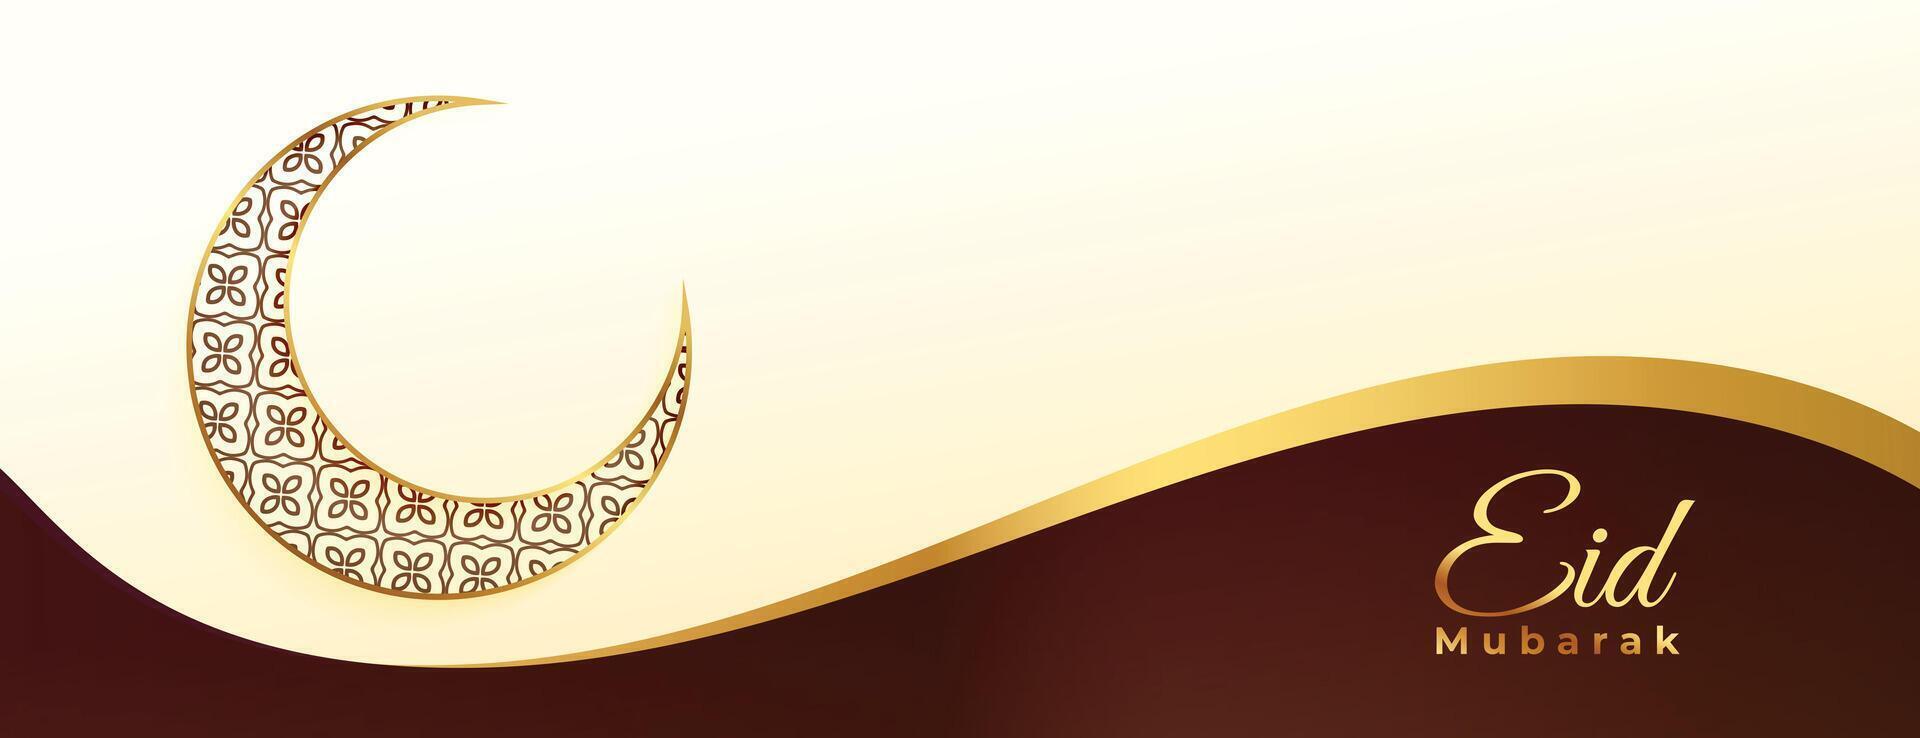 islamico Festival eid mubarak tradizionale bandiera per sociale media messaggi vettore